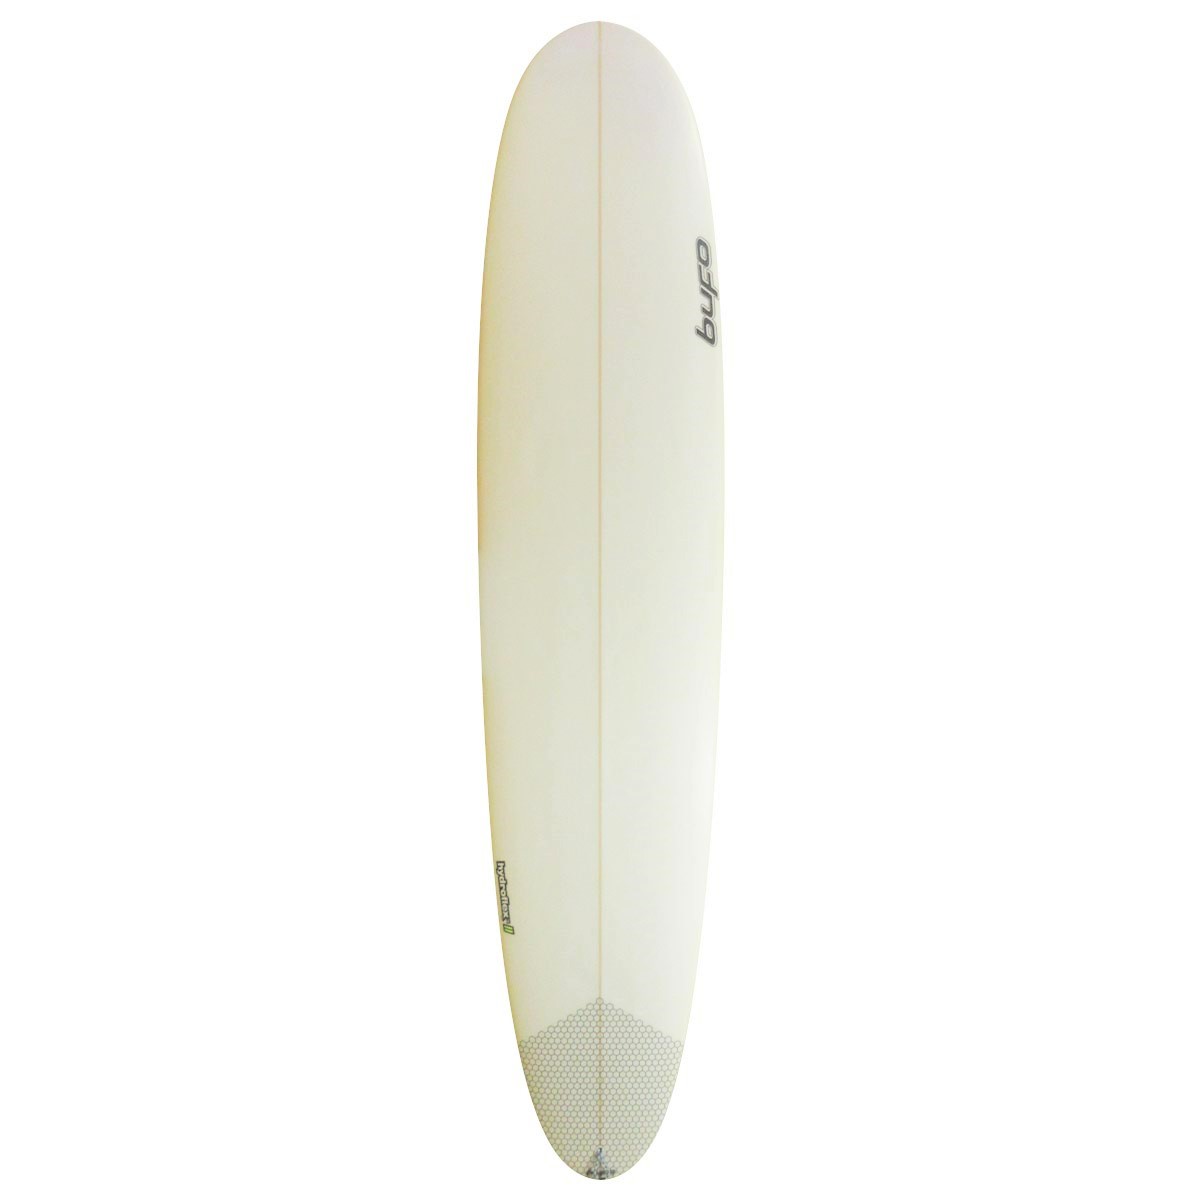  / BUFO SURFBOARDS / ENTERPRISE 9`1